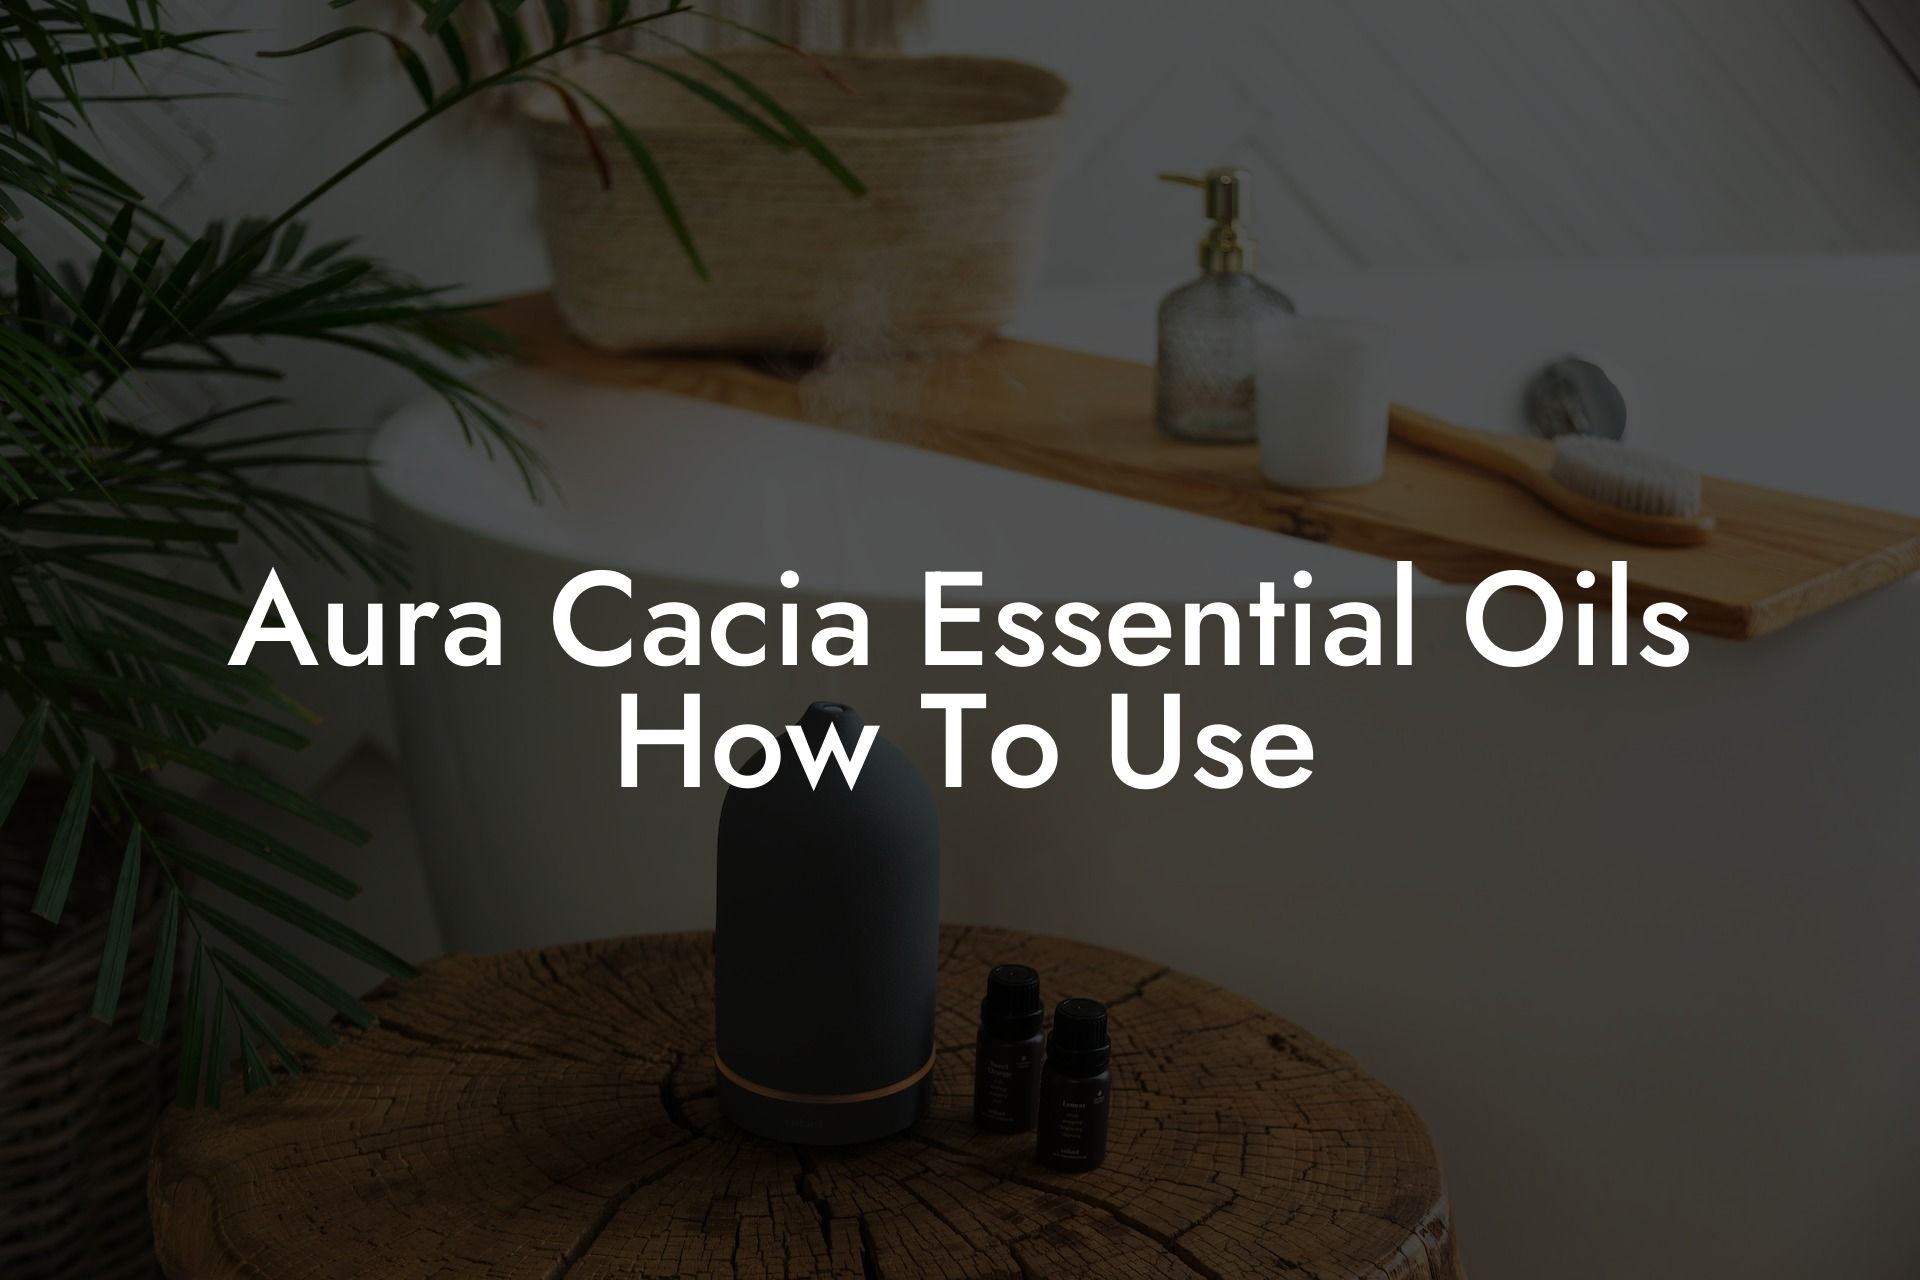 Aura Cacia Essential Oils How To Use